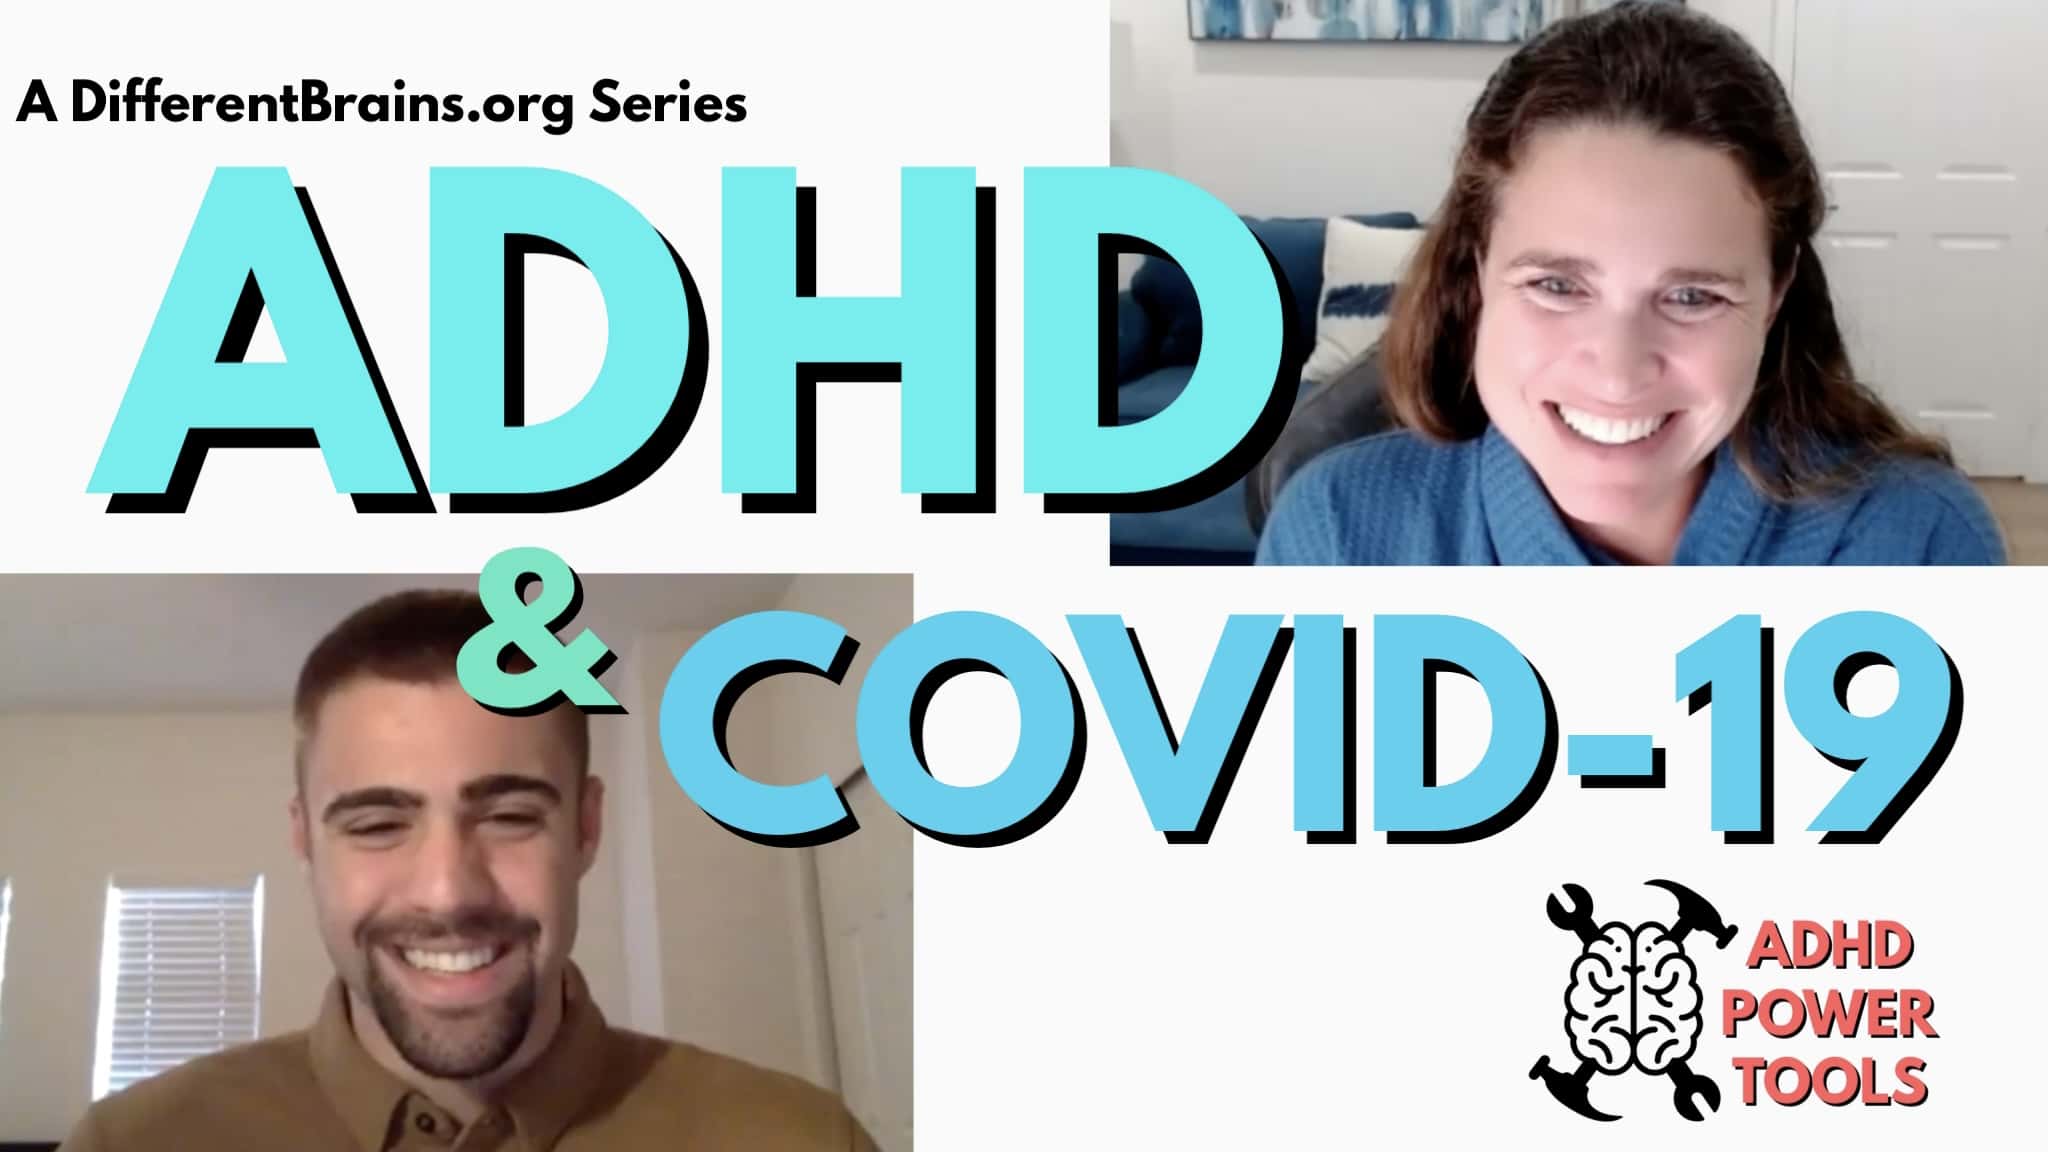 ADHD & COVID-19 | ADHD Power Tools W/ Ali Idriss & Brooke Schnittman